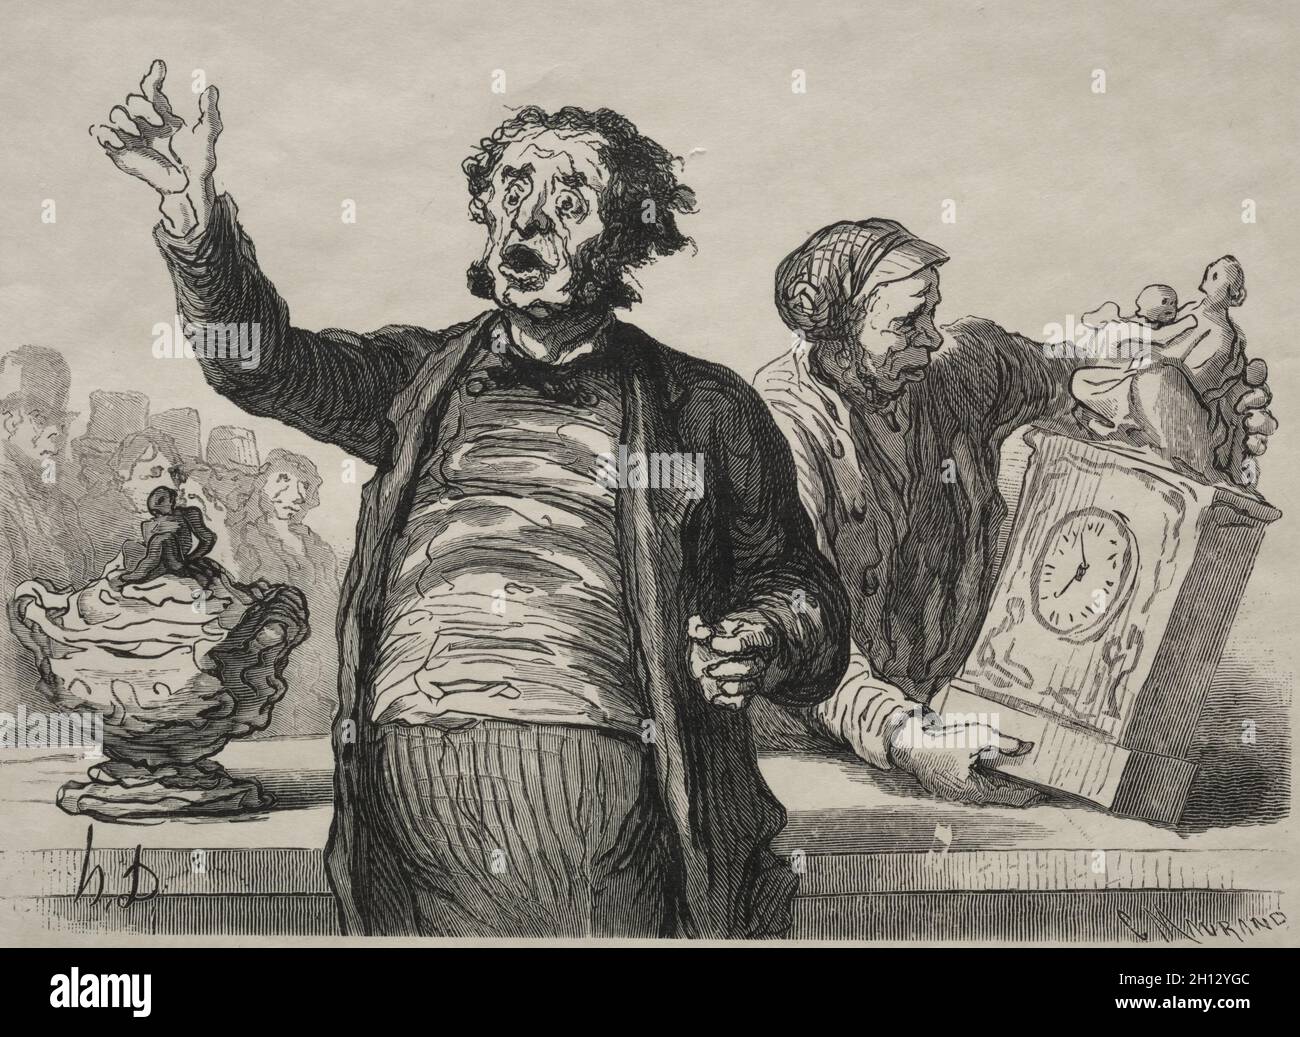 Der Auktionsraum: Der Städtische Krier, 1864. Charles Maurand (Französisch, 1824-1904), nach Honoré Daumier (Französisch, 1808-1879). Holzgravur; Stockfoto